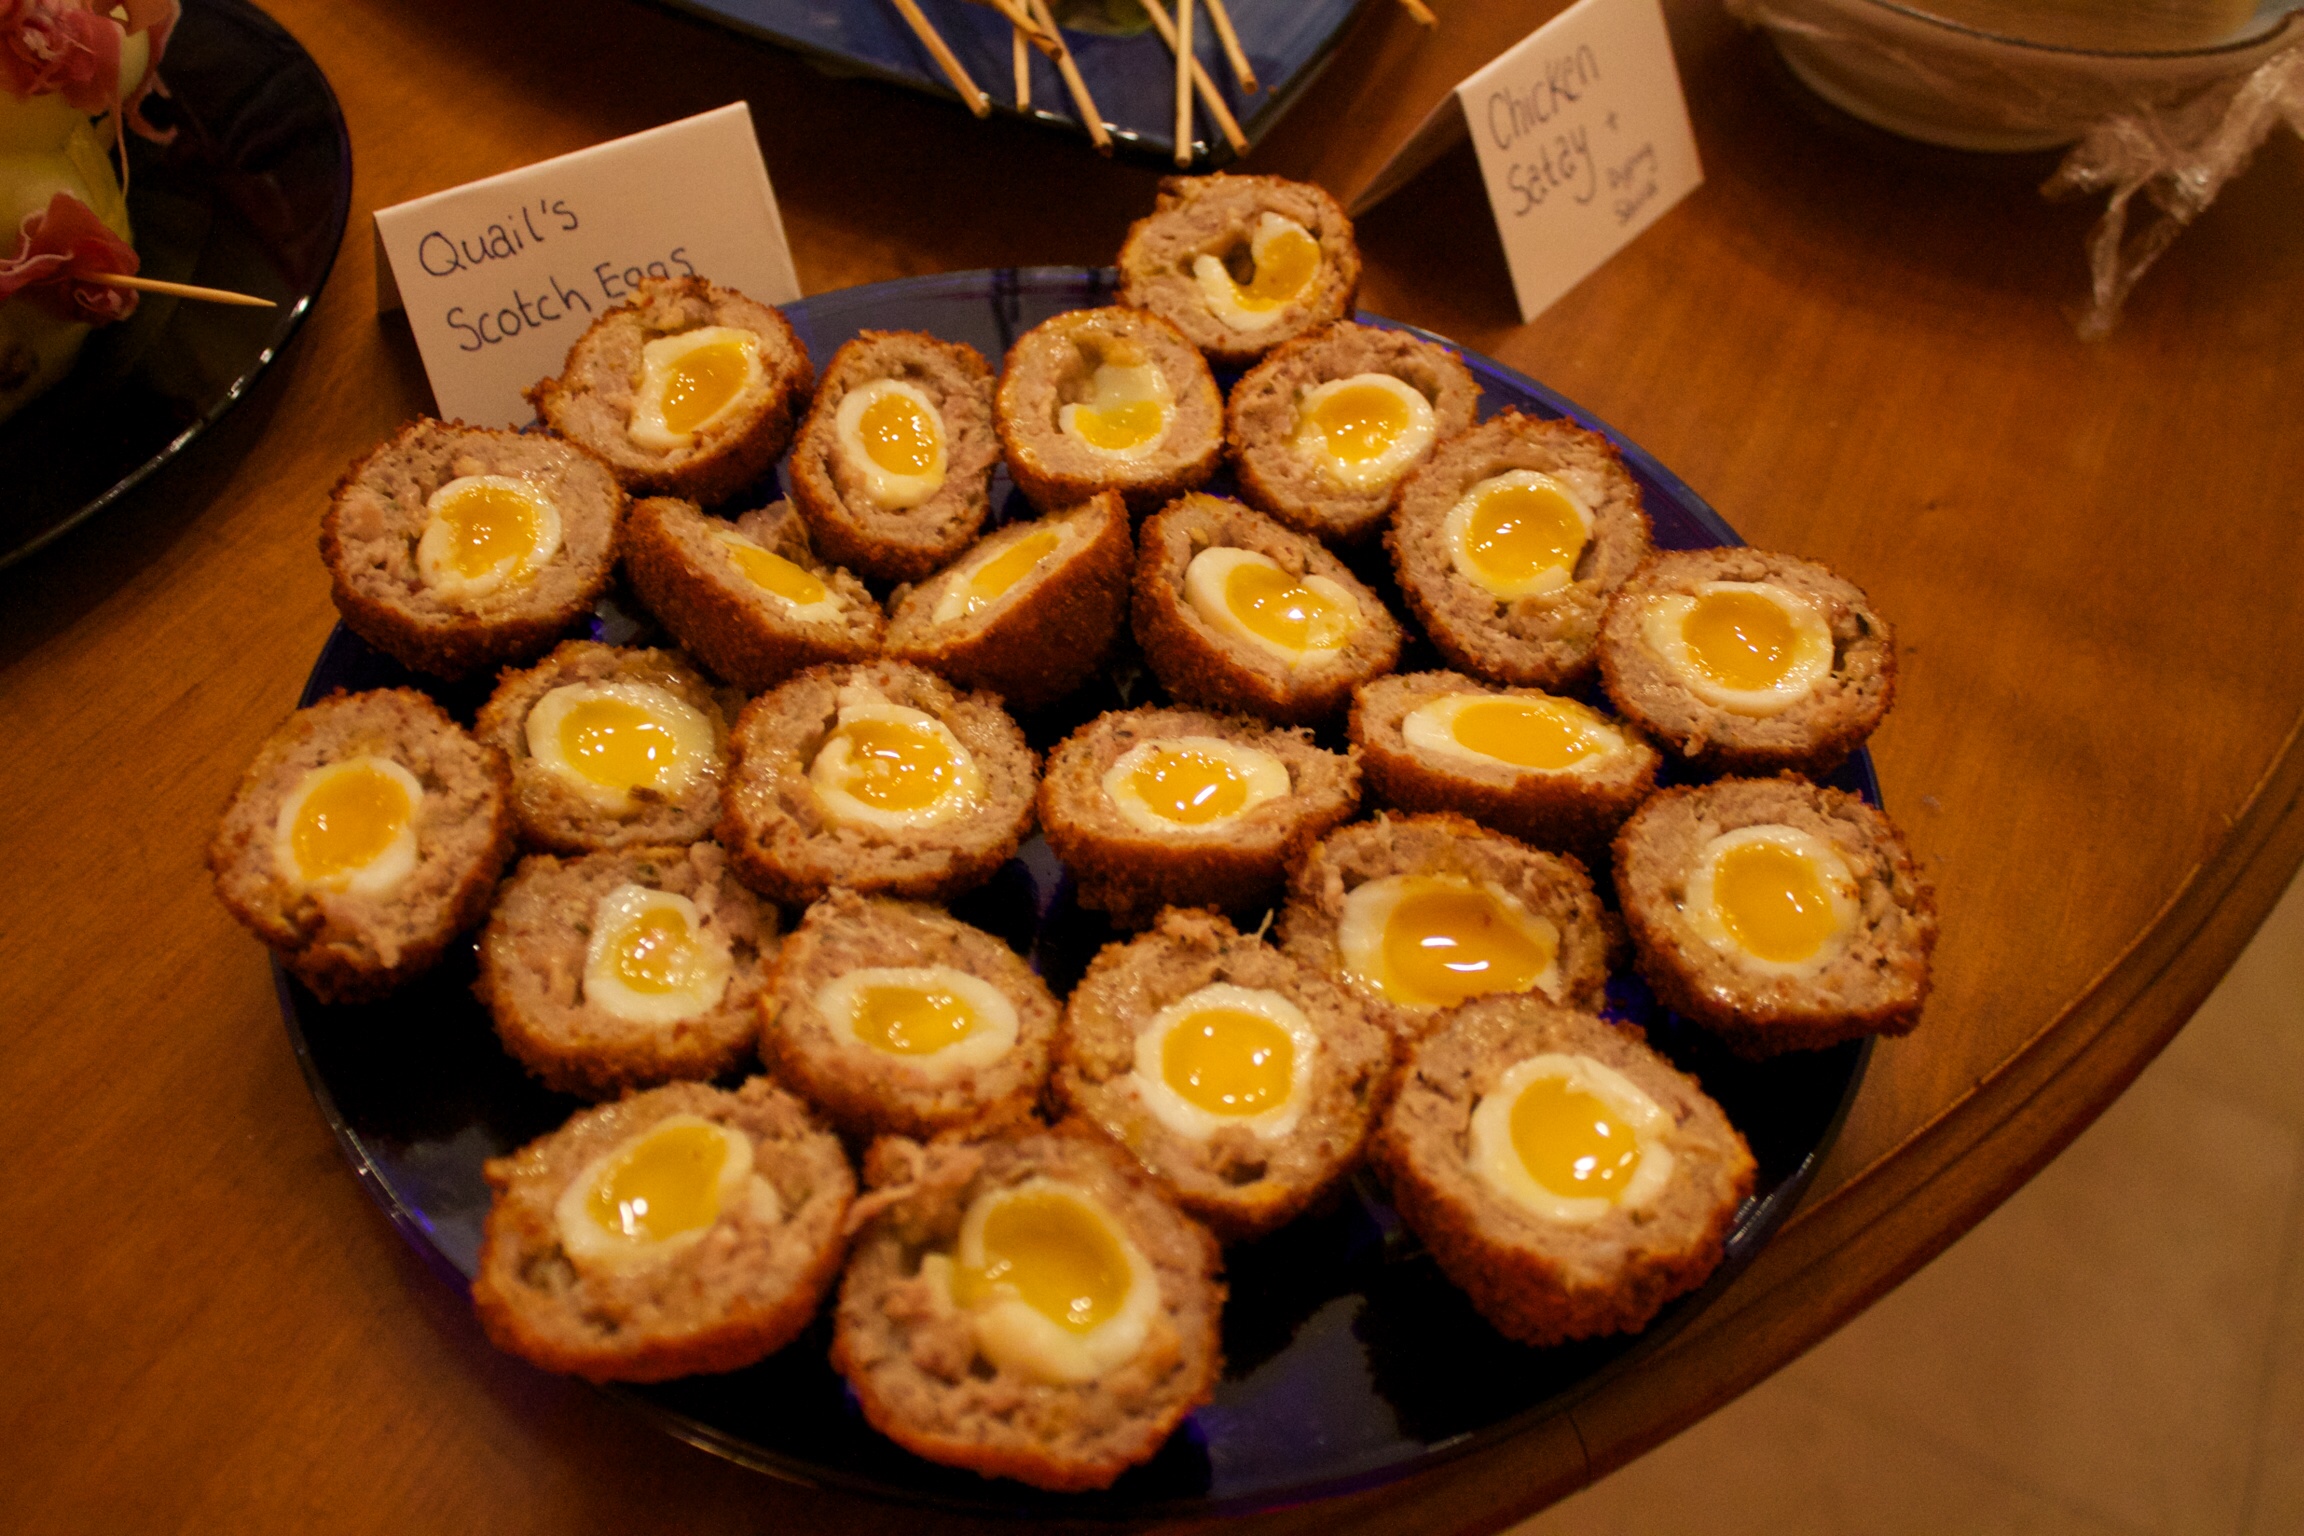 Naught Christmas finger food: Quails egg scotch eggs